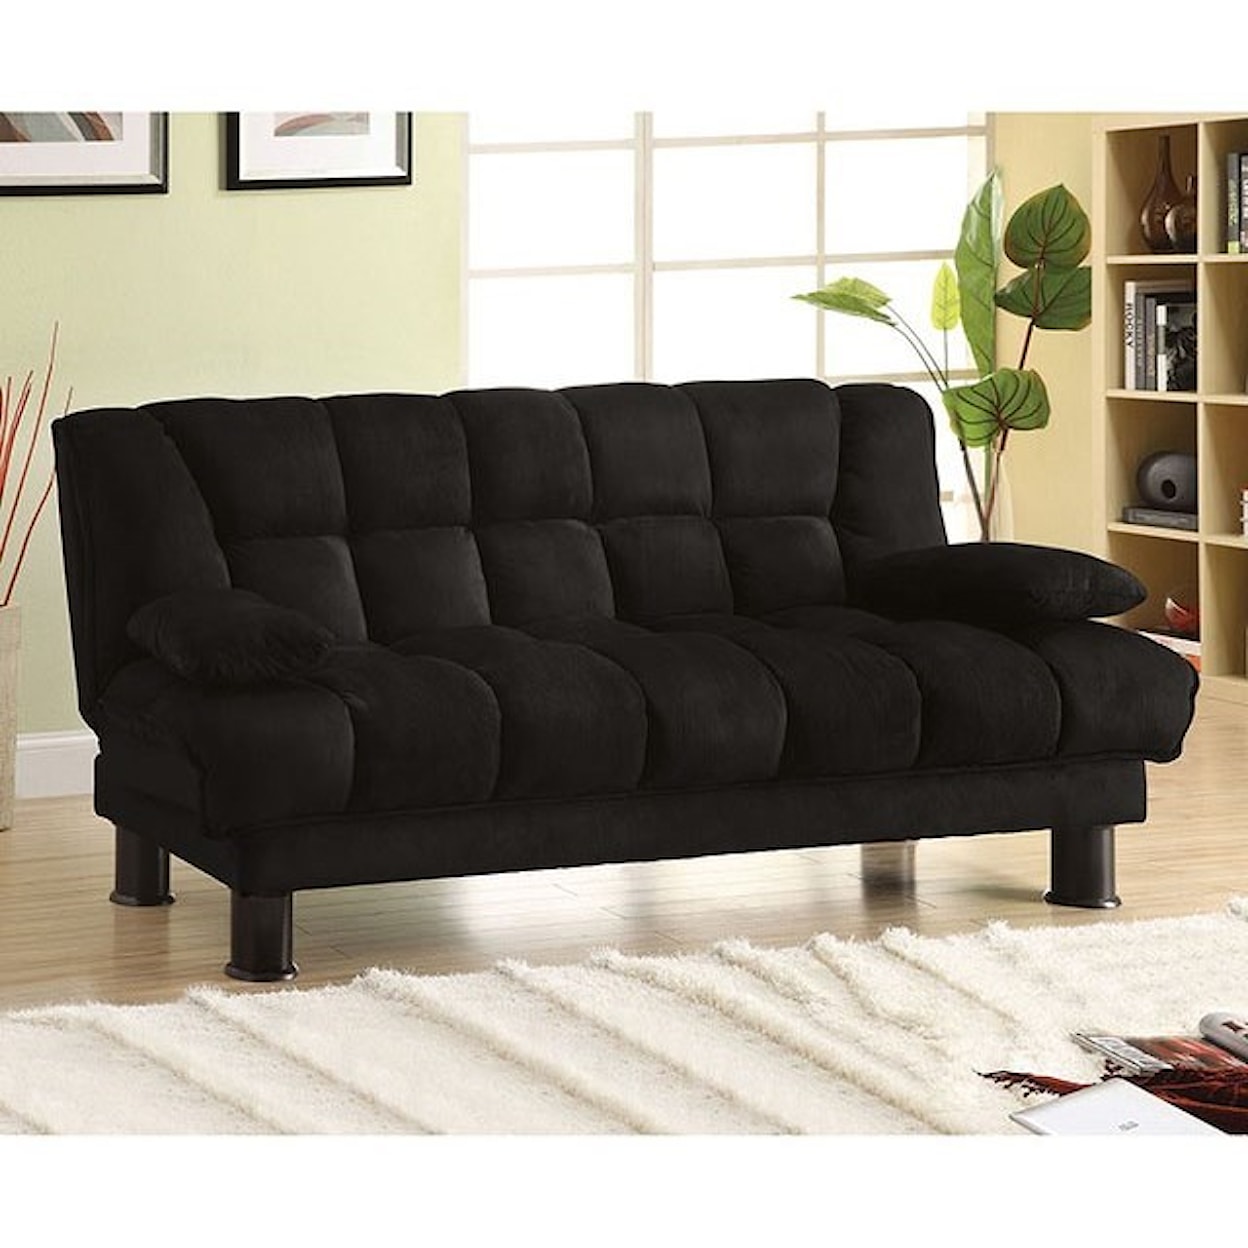 Furniture of America Bonifa Elephant Skin Microfiber Futon Sofa